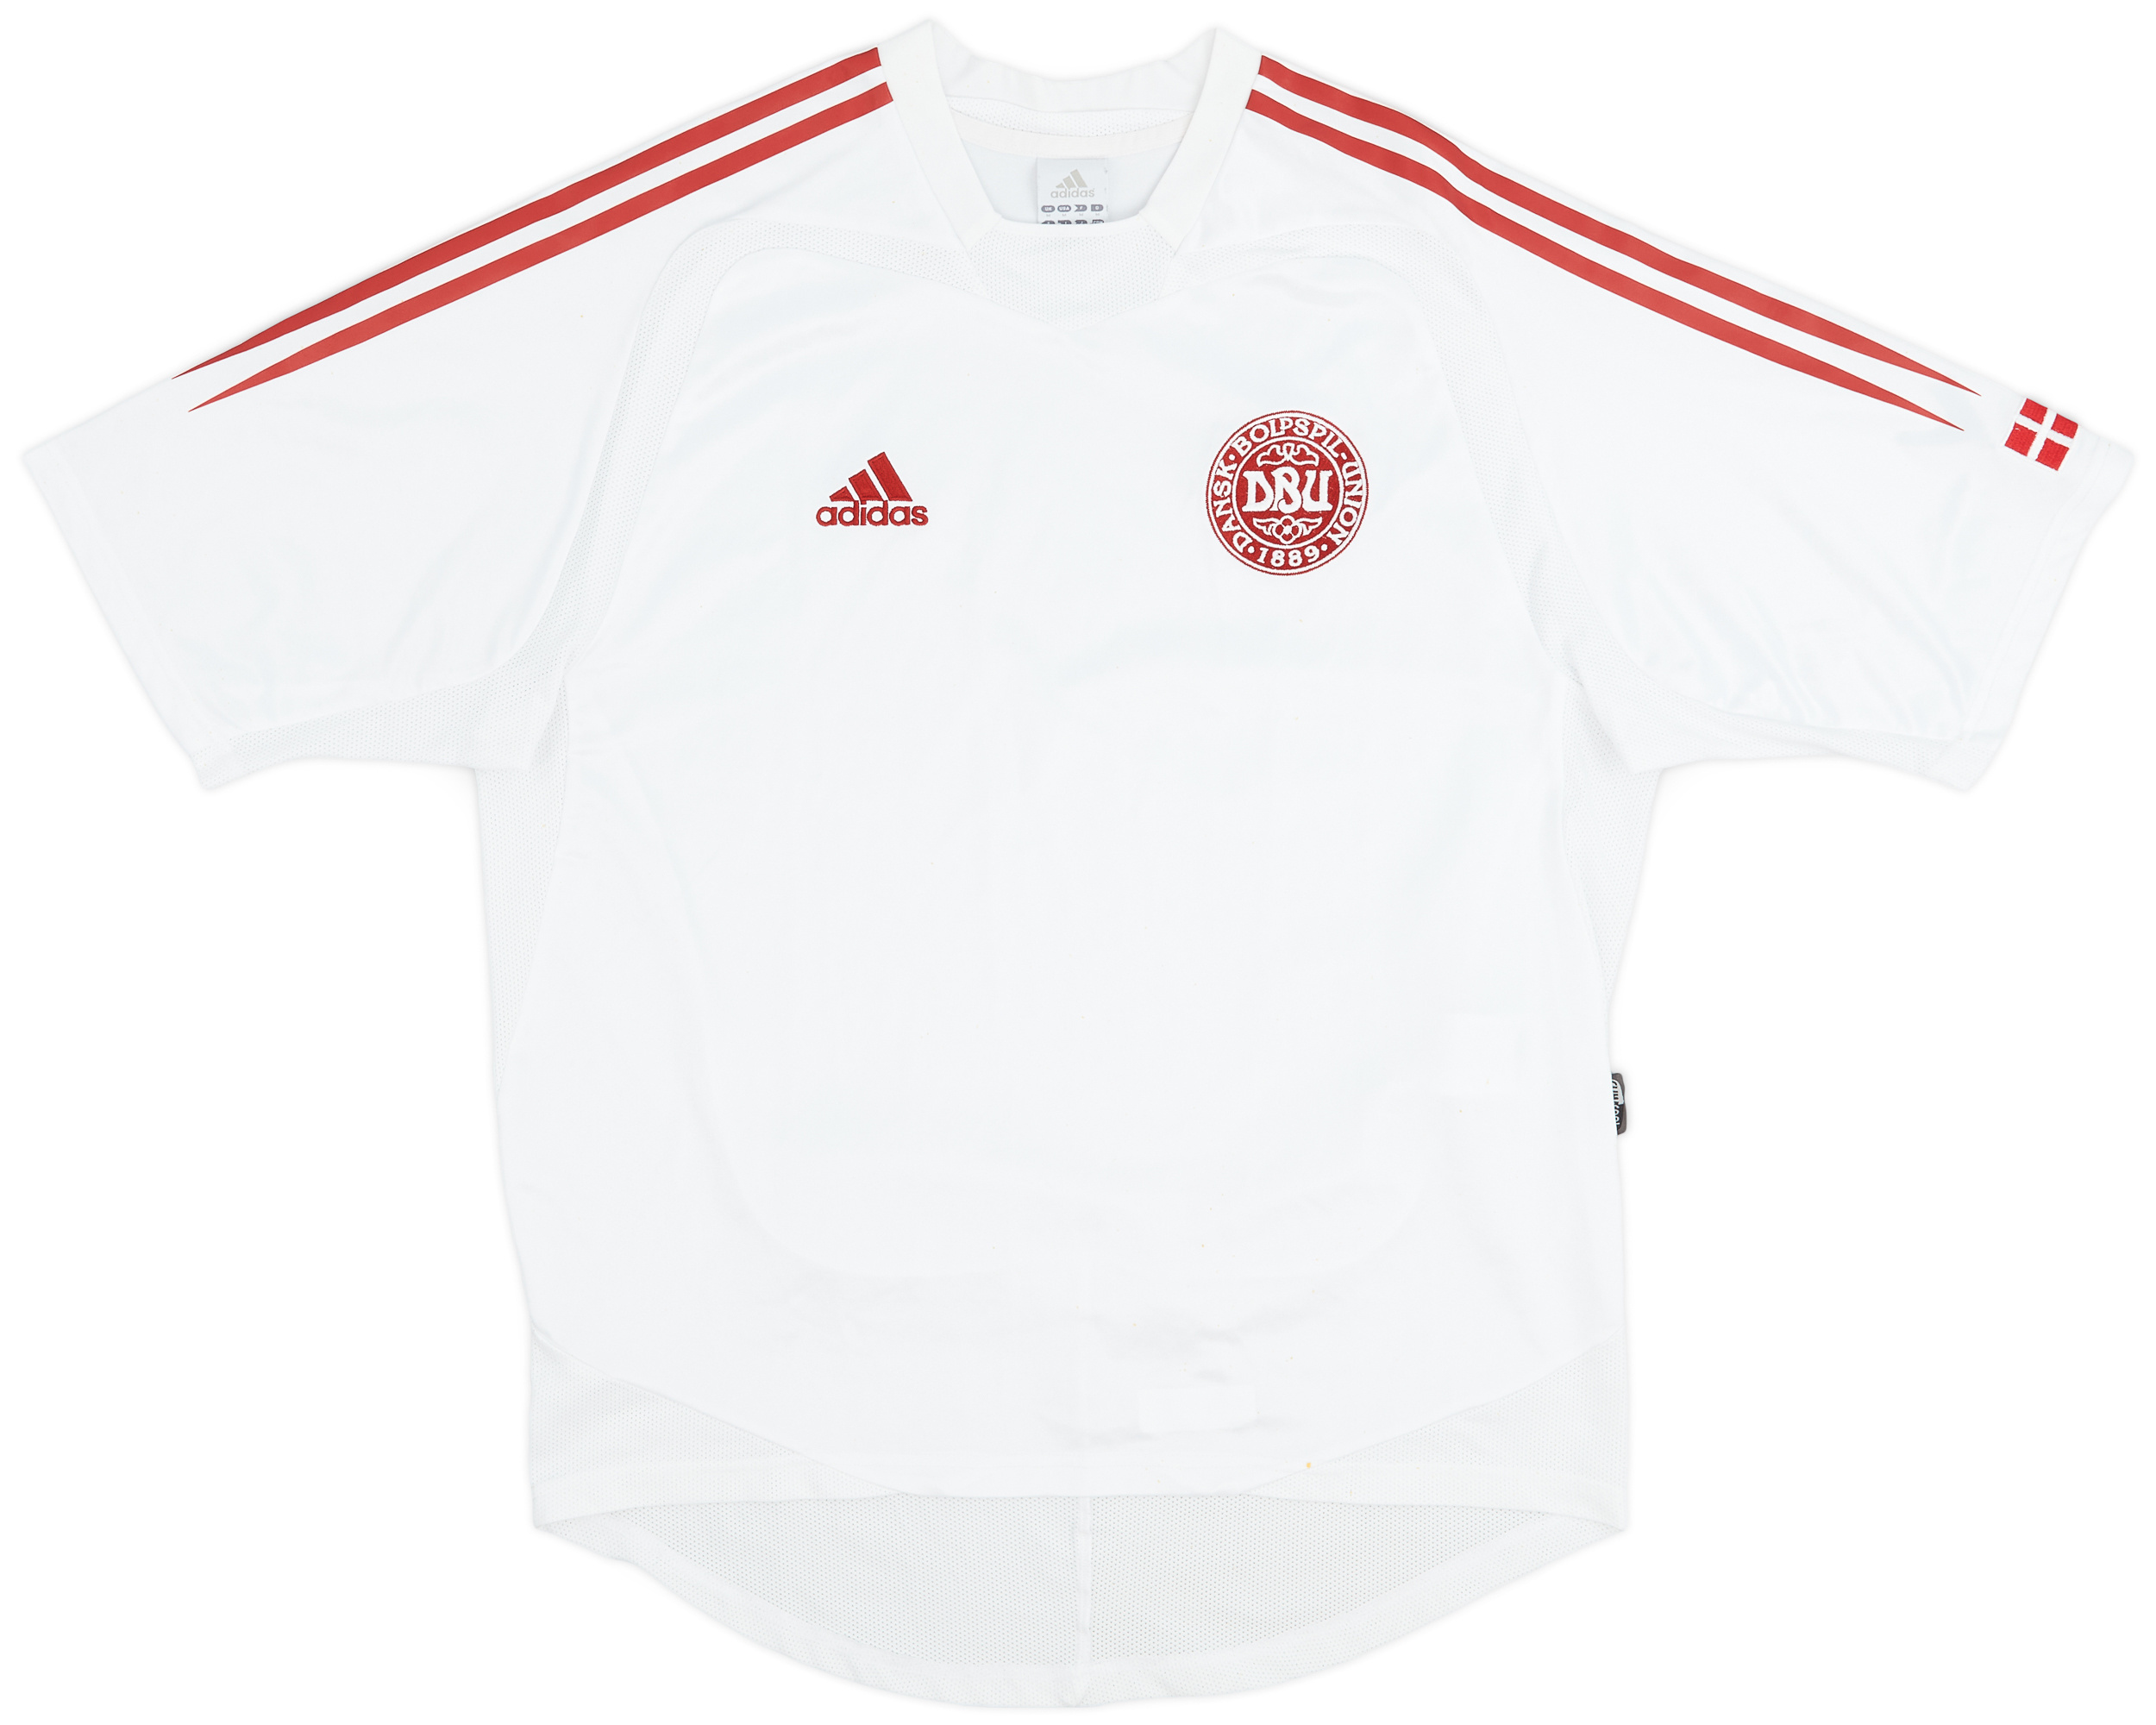 Retro Denmark Shirt